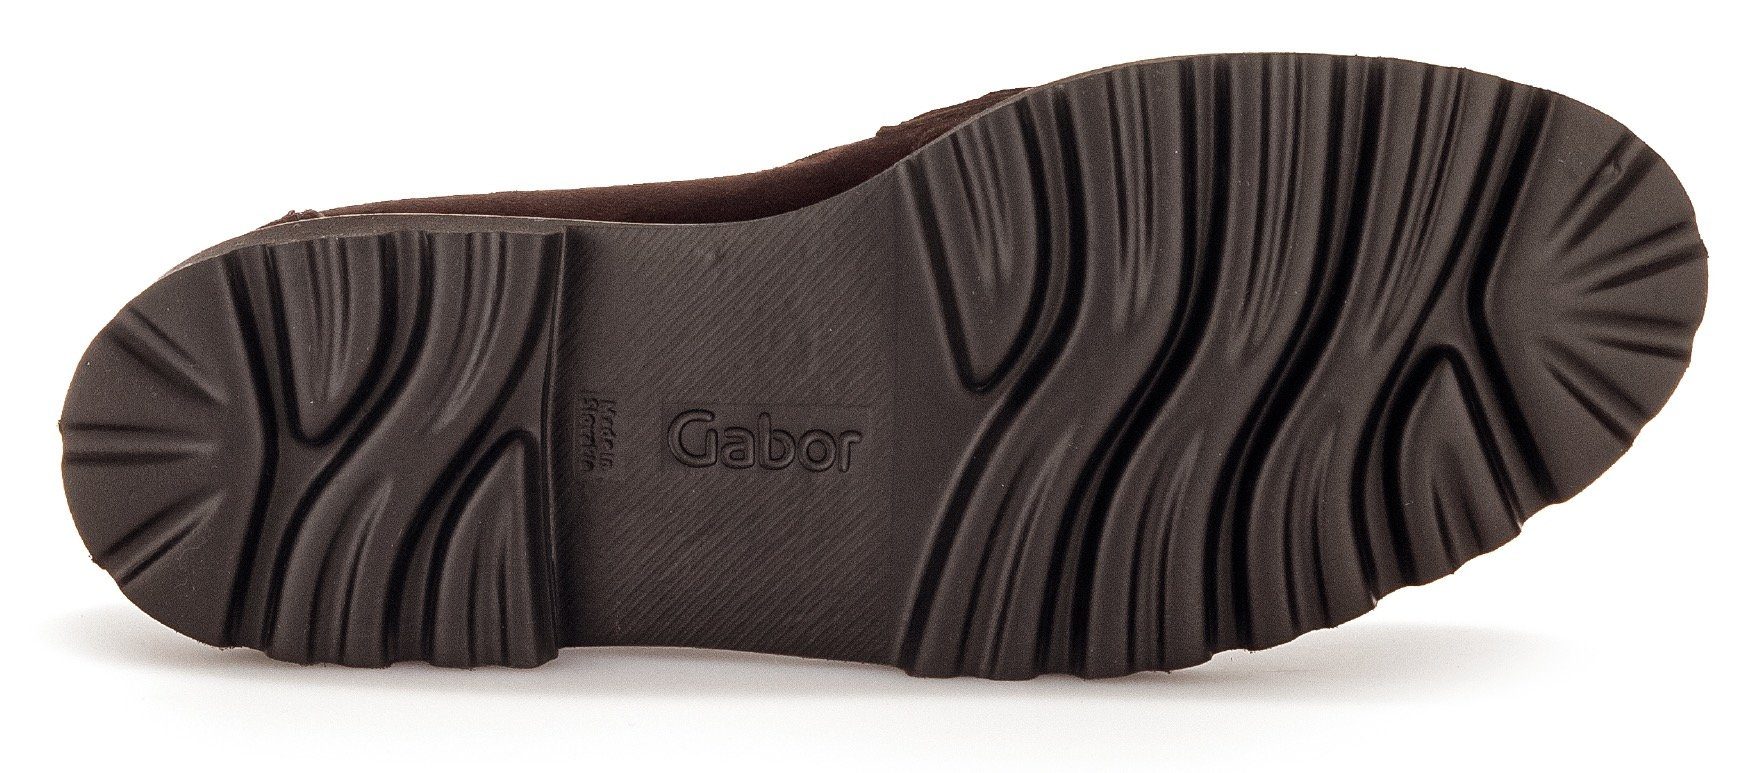 Gabor Slipper mit Fitting-Ausstattung dunkelbraun-goldfarben Best